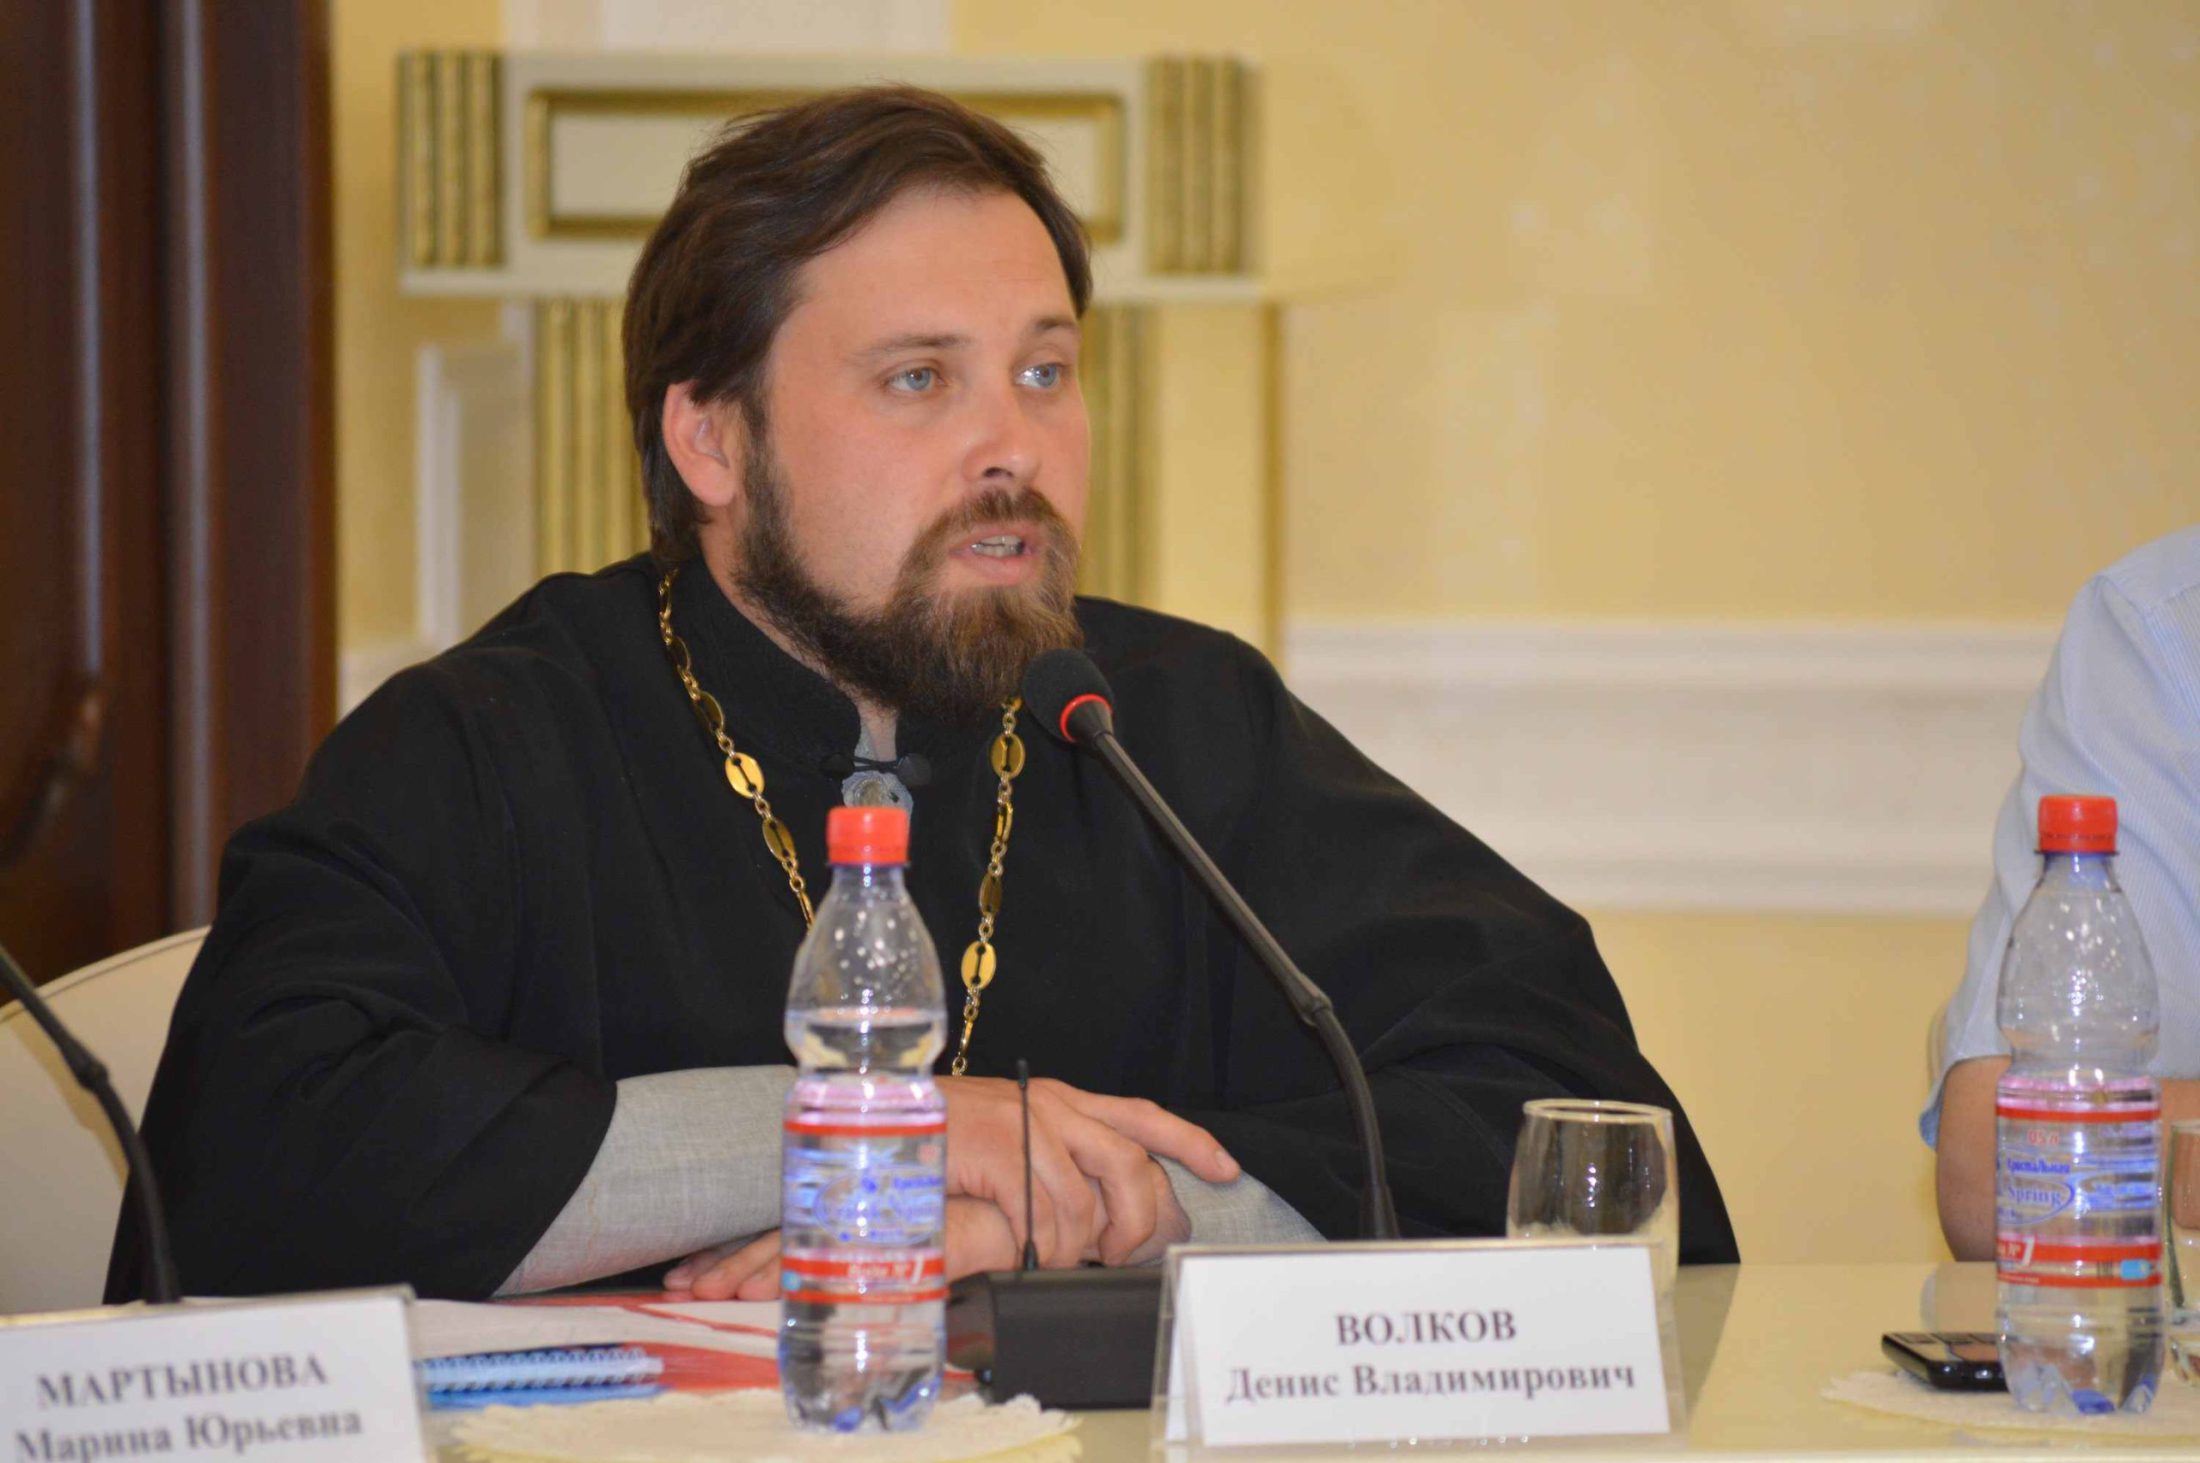 Преподаватель семинарии принял участие в обсуждении православно-исламского взаимодействия России и Казахстана